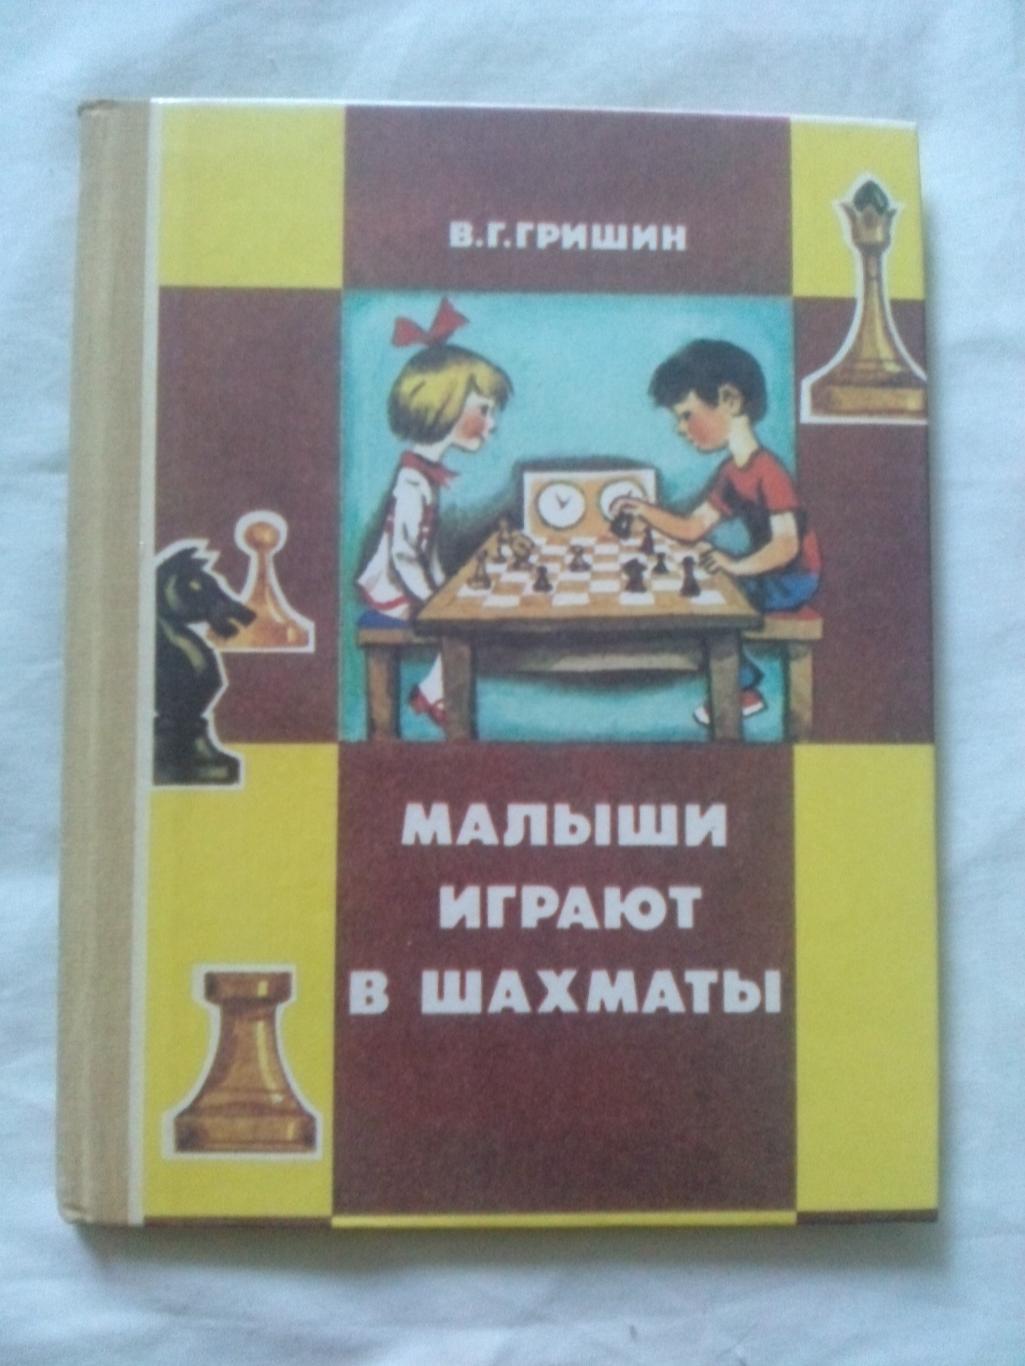 В.Г. Гришин -Малыши играют в шахматы1991 г.( Спорт )